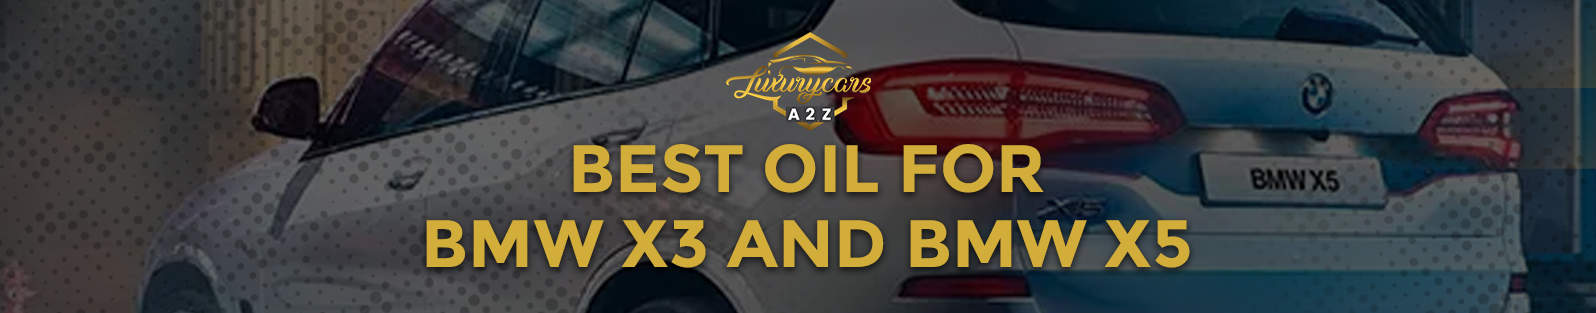 Najlepszy olej do BMW X3 i BMW X5 [Odpowiedź]